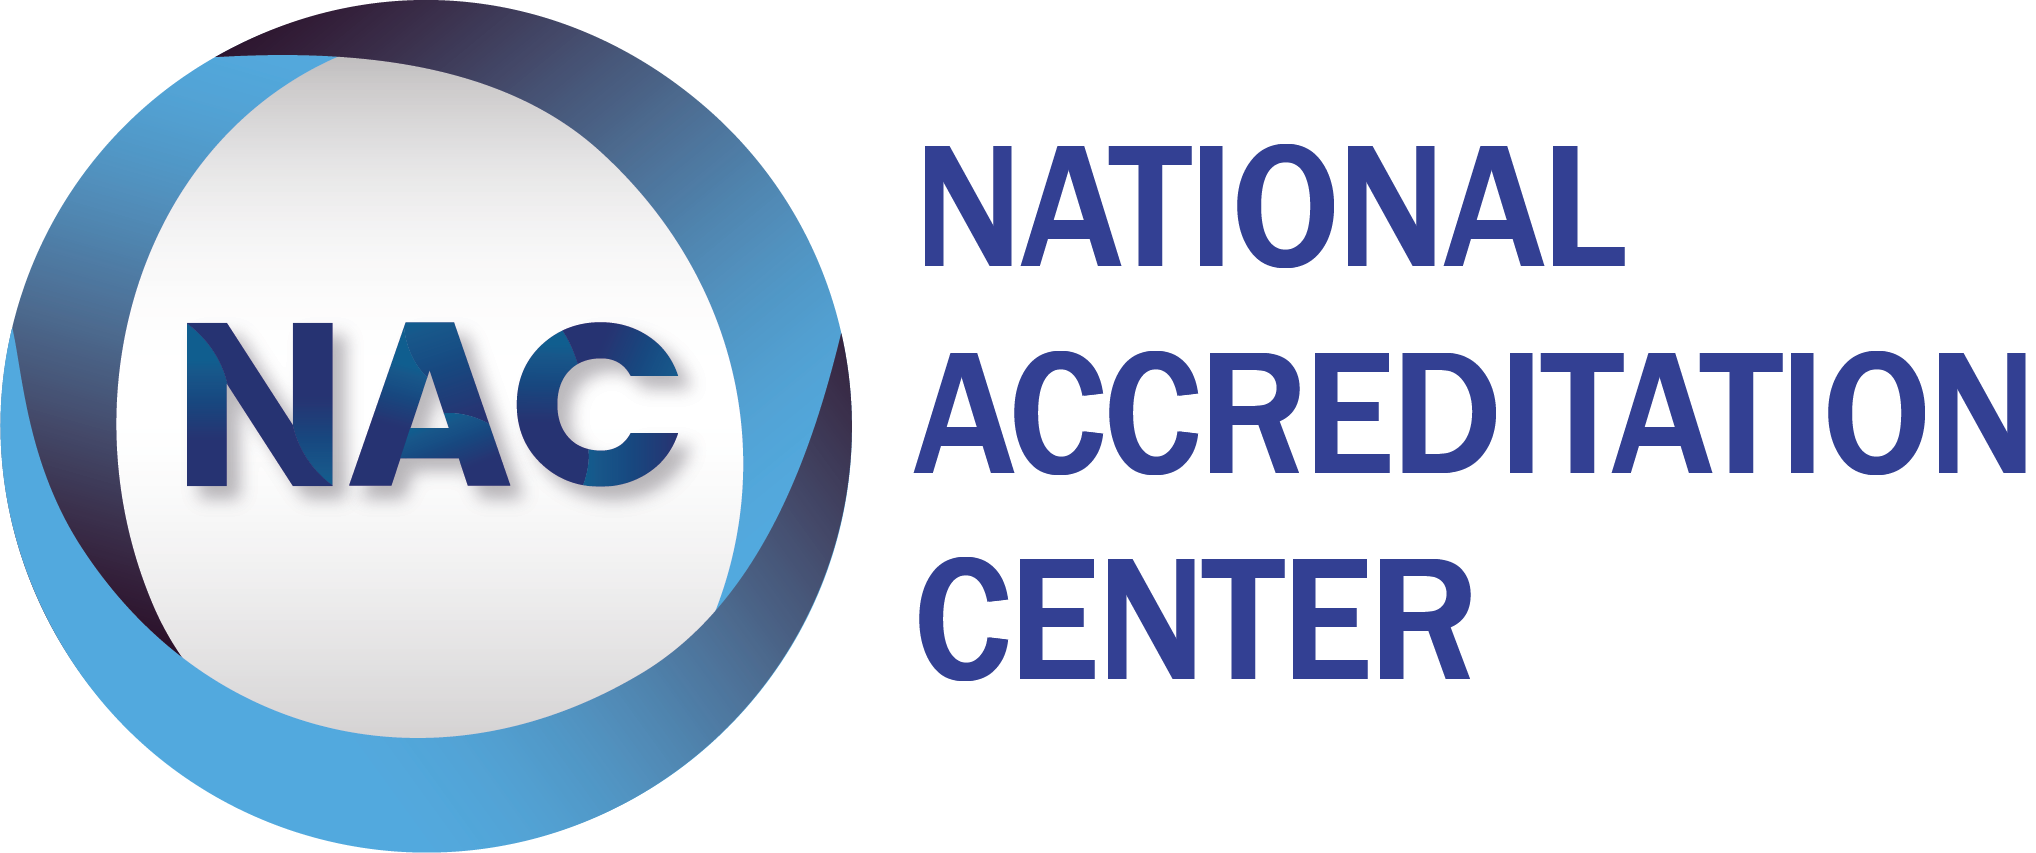 Estados Unidos de América - National Accreditation Center (NAC)